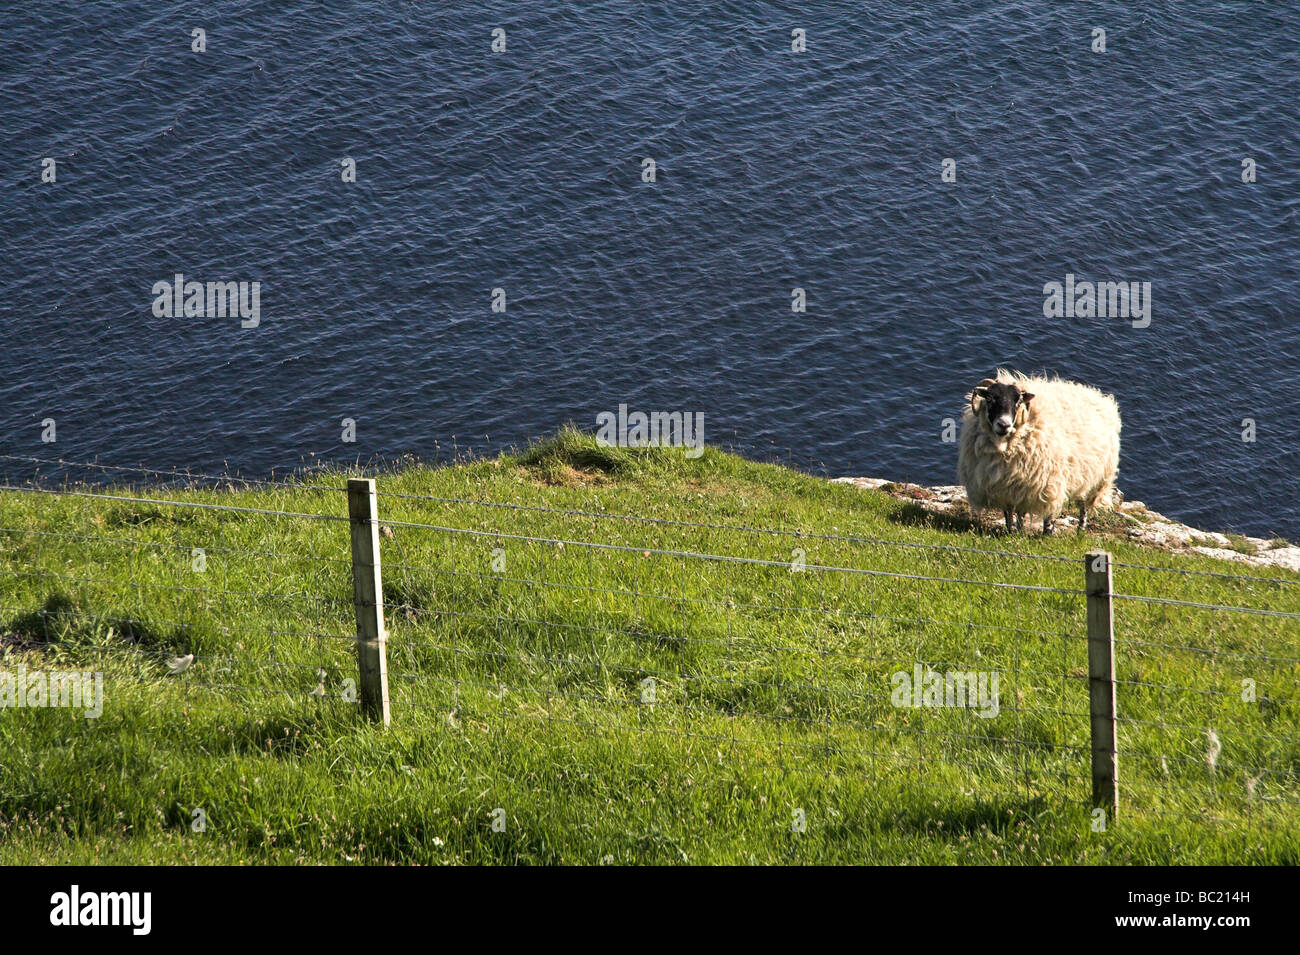 Sheep on a cliff edge, Isle of Skye, Inner Hebrides, West Coast of Scotland, UK Stock Photo